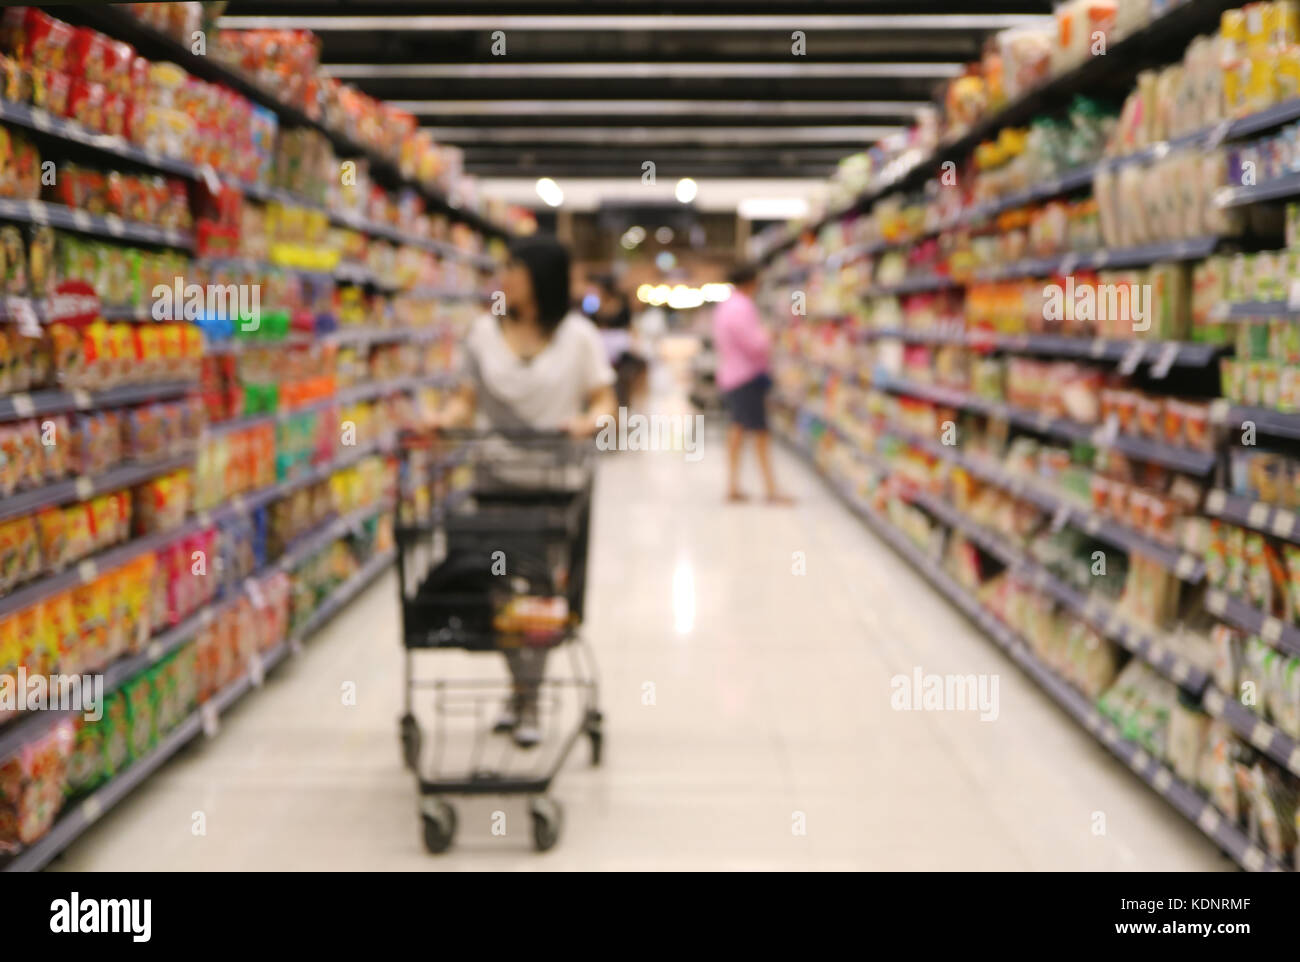 Fuori fuoco colpo di una donna con il suo carrello guardando il ripiano di generi alimentari nel supermercato Foto Stock